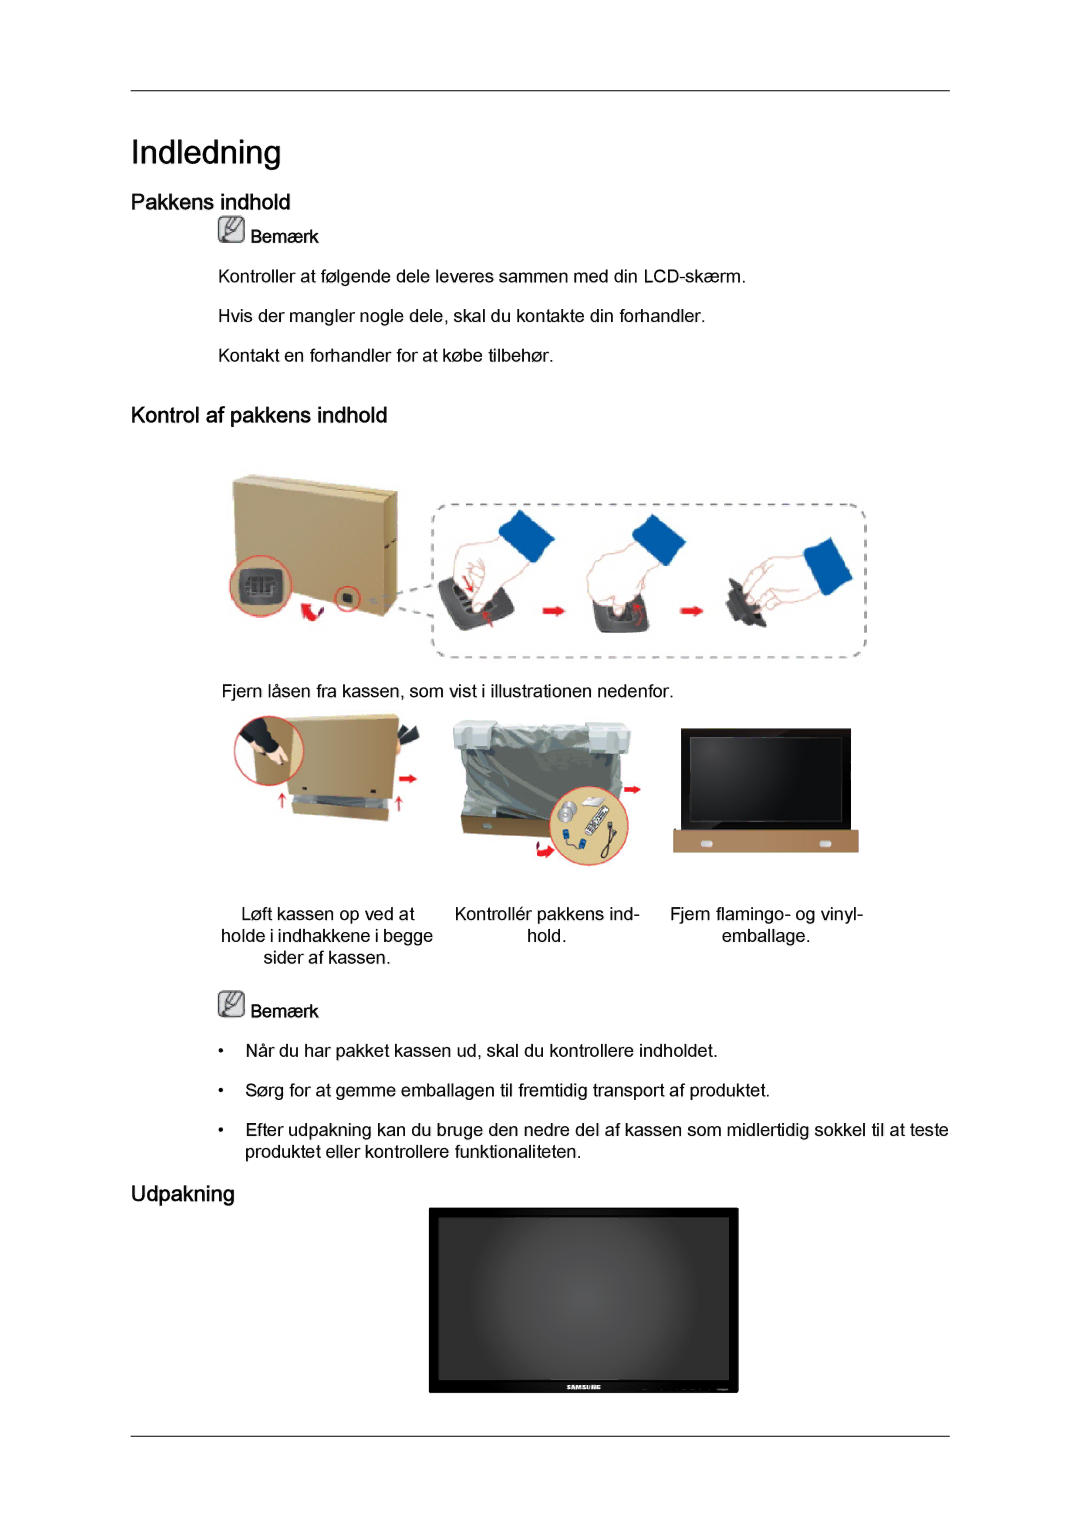 Samsung LH65MGQLBF/EN manual Pakkens indhold, Kontrol af pakkens indhold, Udpakning 